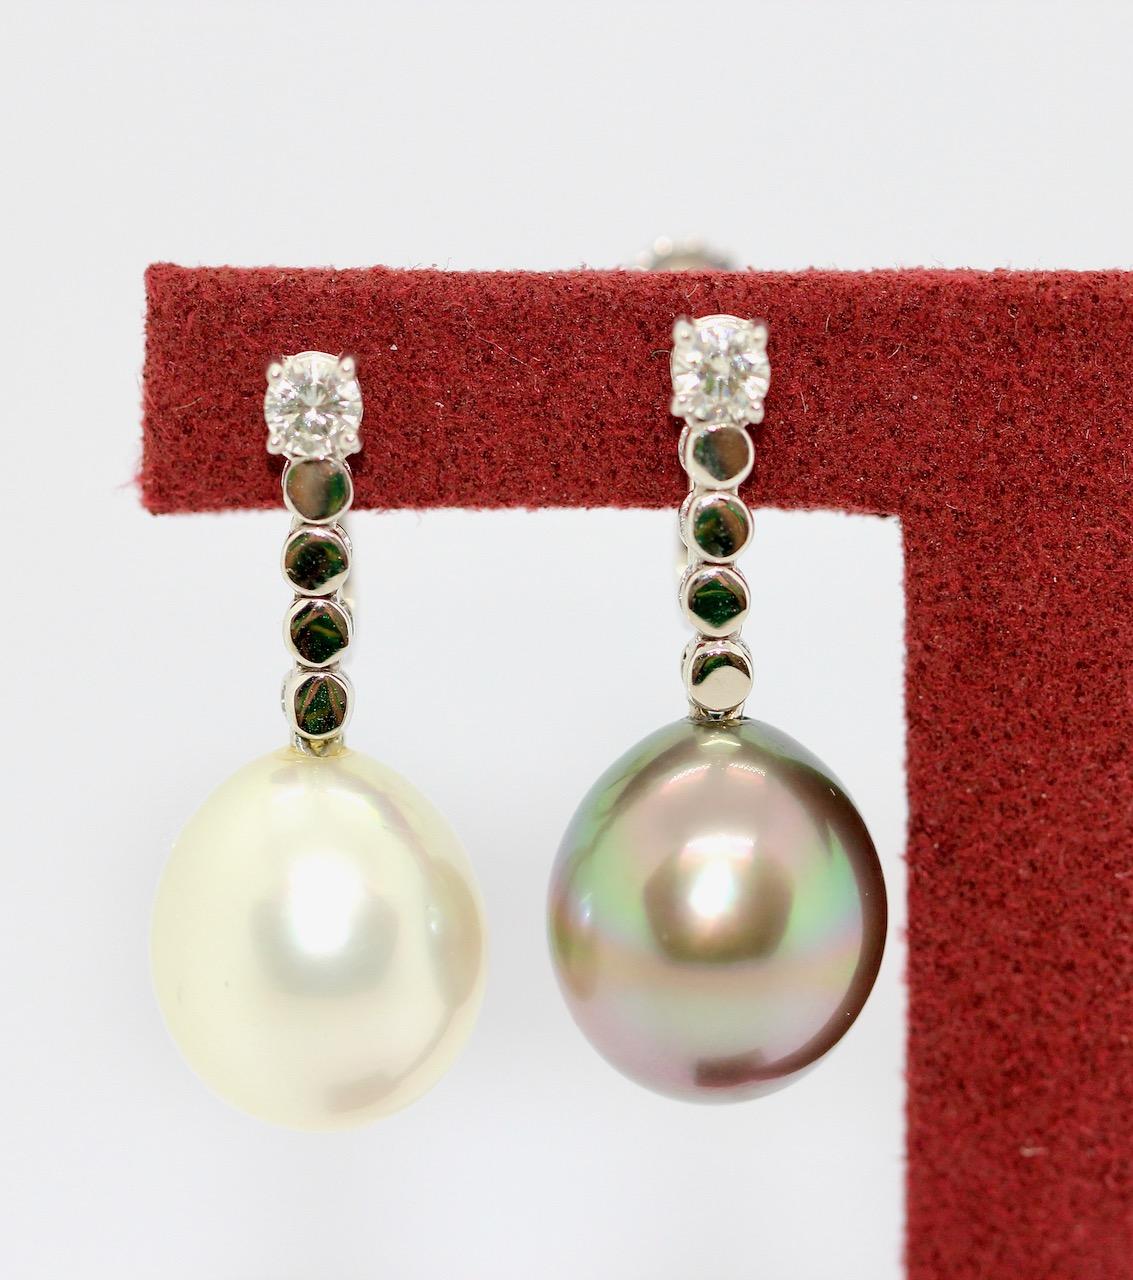 Charmante Diamant-Ohrringe mit natürlichen weißen und grauen Südseeperlen, Tahiti-Perlen. 18 Karat Weißgold.

Die Perlen haben jeweils einen Durchmesser von ca. 11,8 mm

Inklusive Echtheitszertifikat.